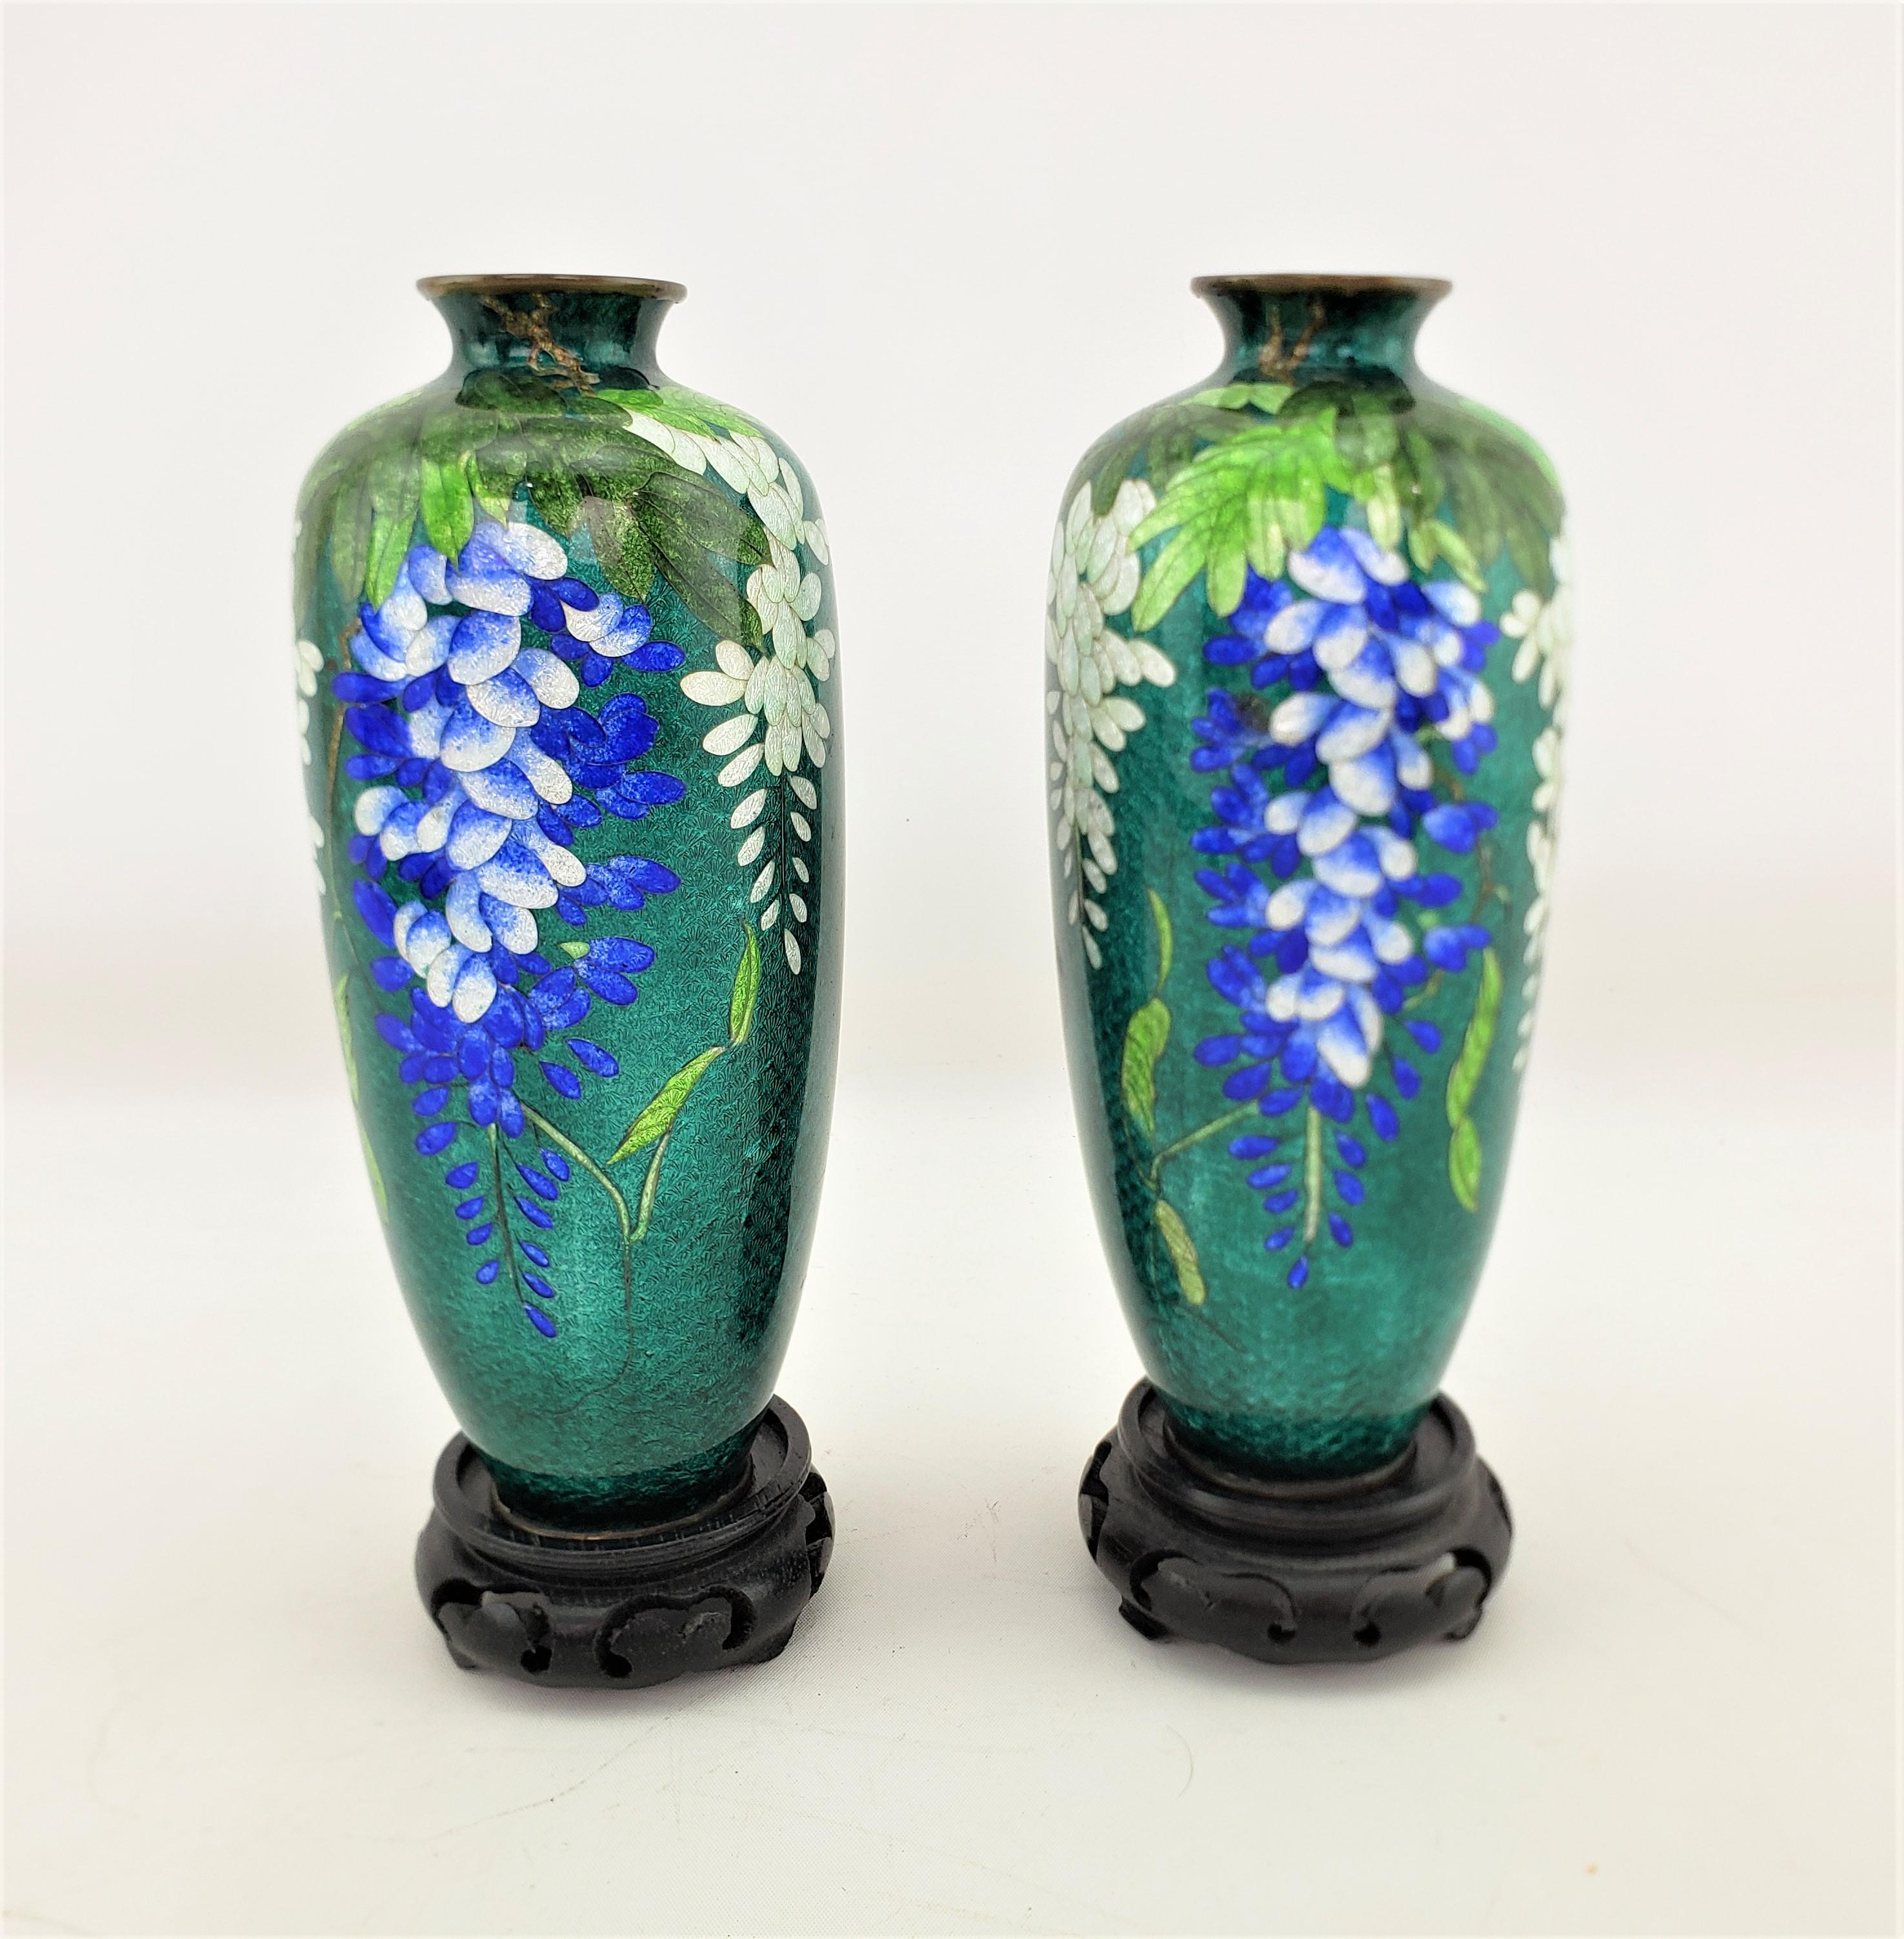 Dieses Vasenpaar ist unsigniert, stammt aber vermutlich aus Japan und wurde um 1920 in einem anglo-japanischen Stil gefertigt. Die Vasen sind aus graviertem Messing mit einem leuchtend blaugrünen Cloisonné-Grund mit leuchtend blauen und weißen